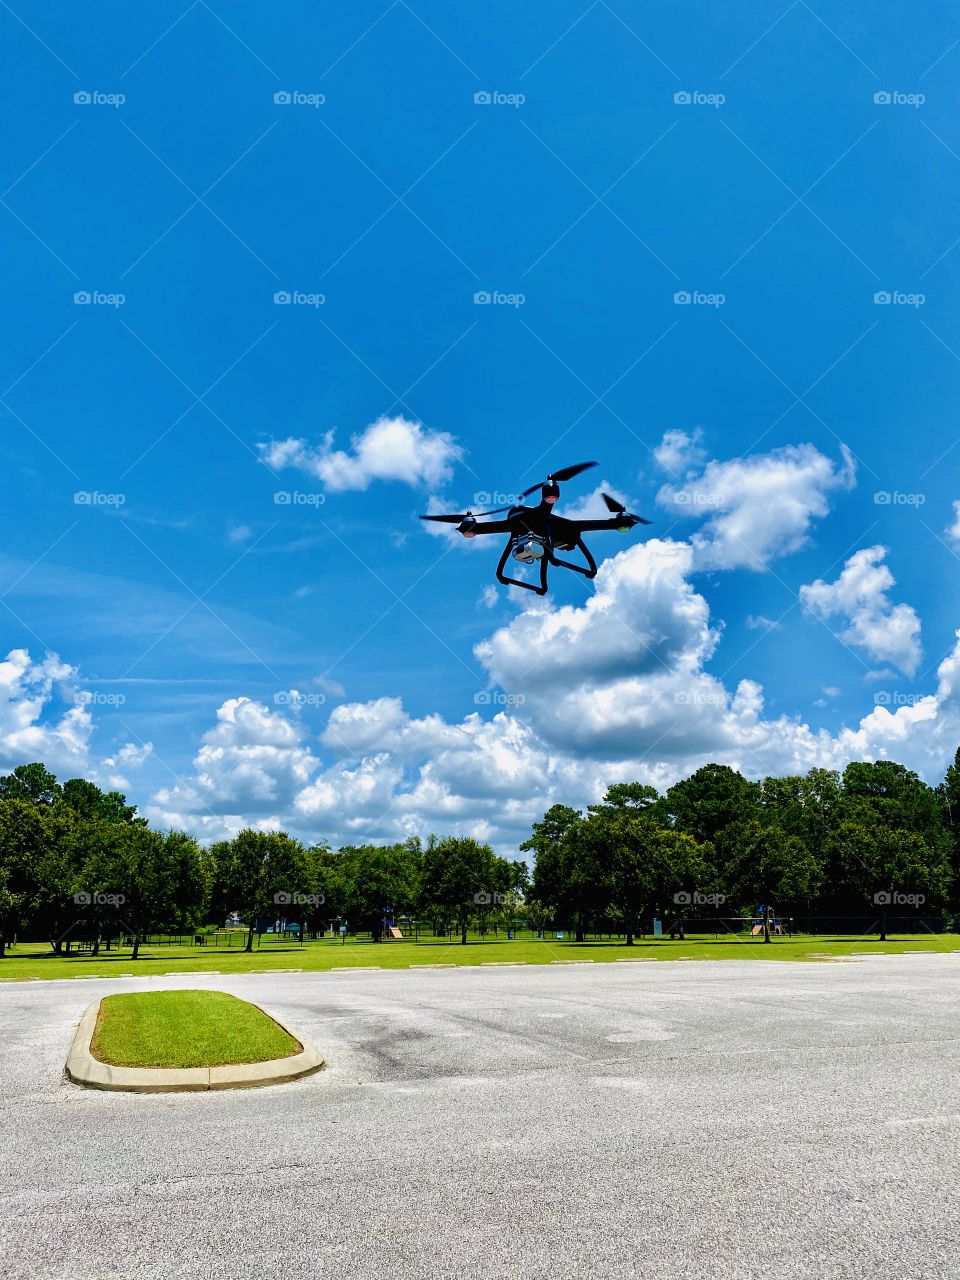 Drone in flight under a blue sky